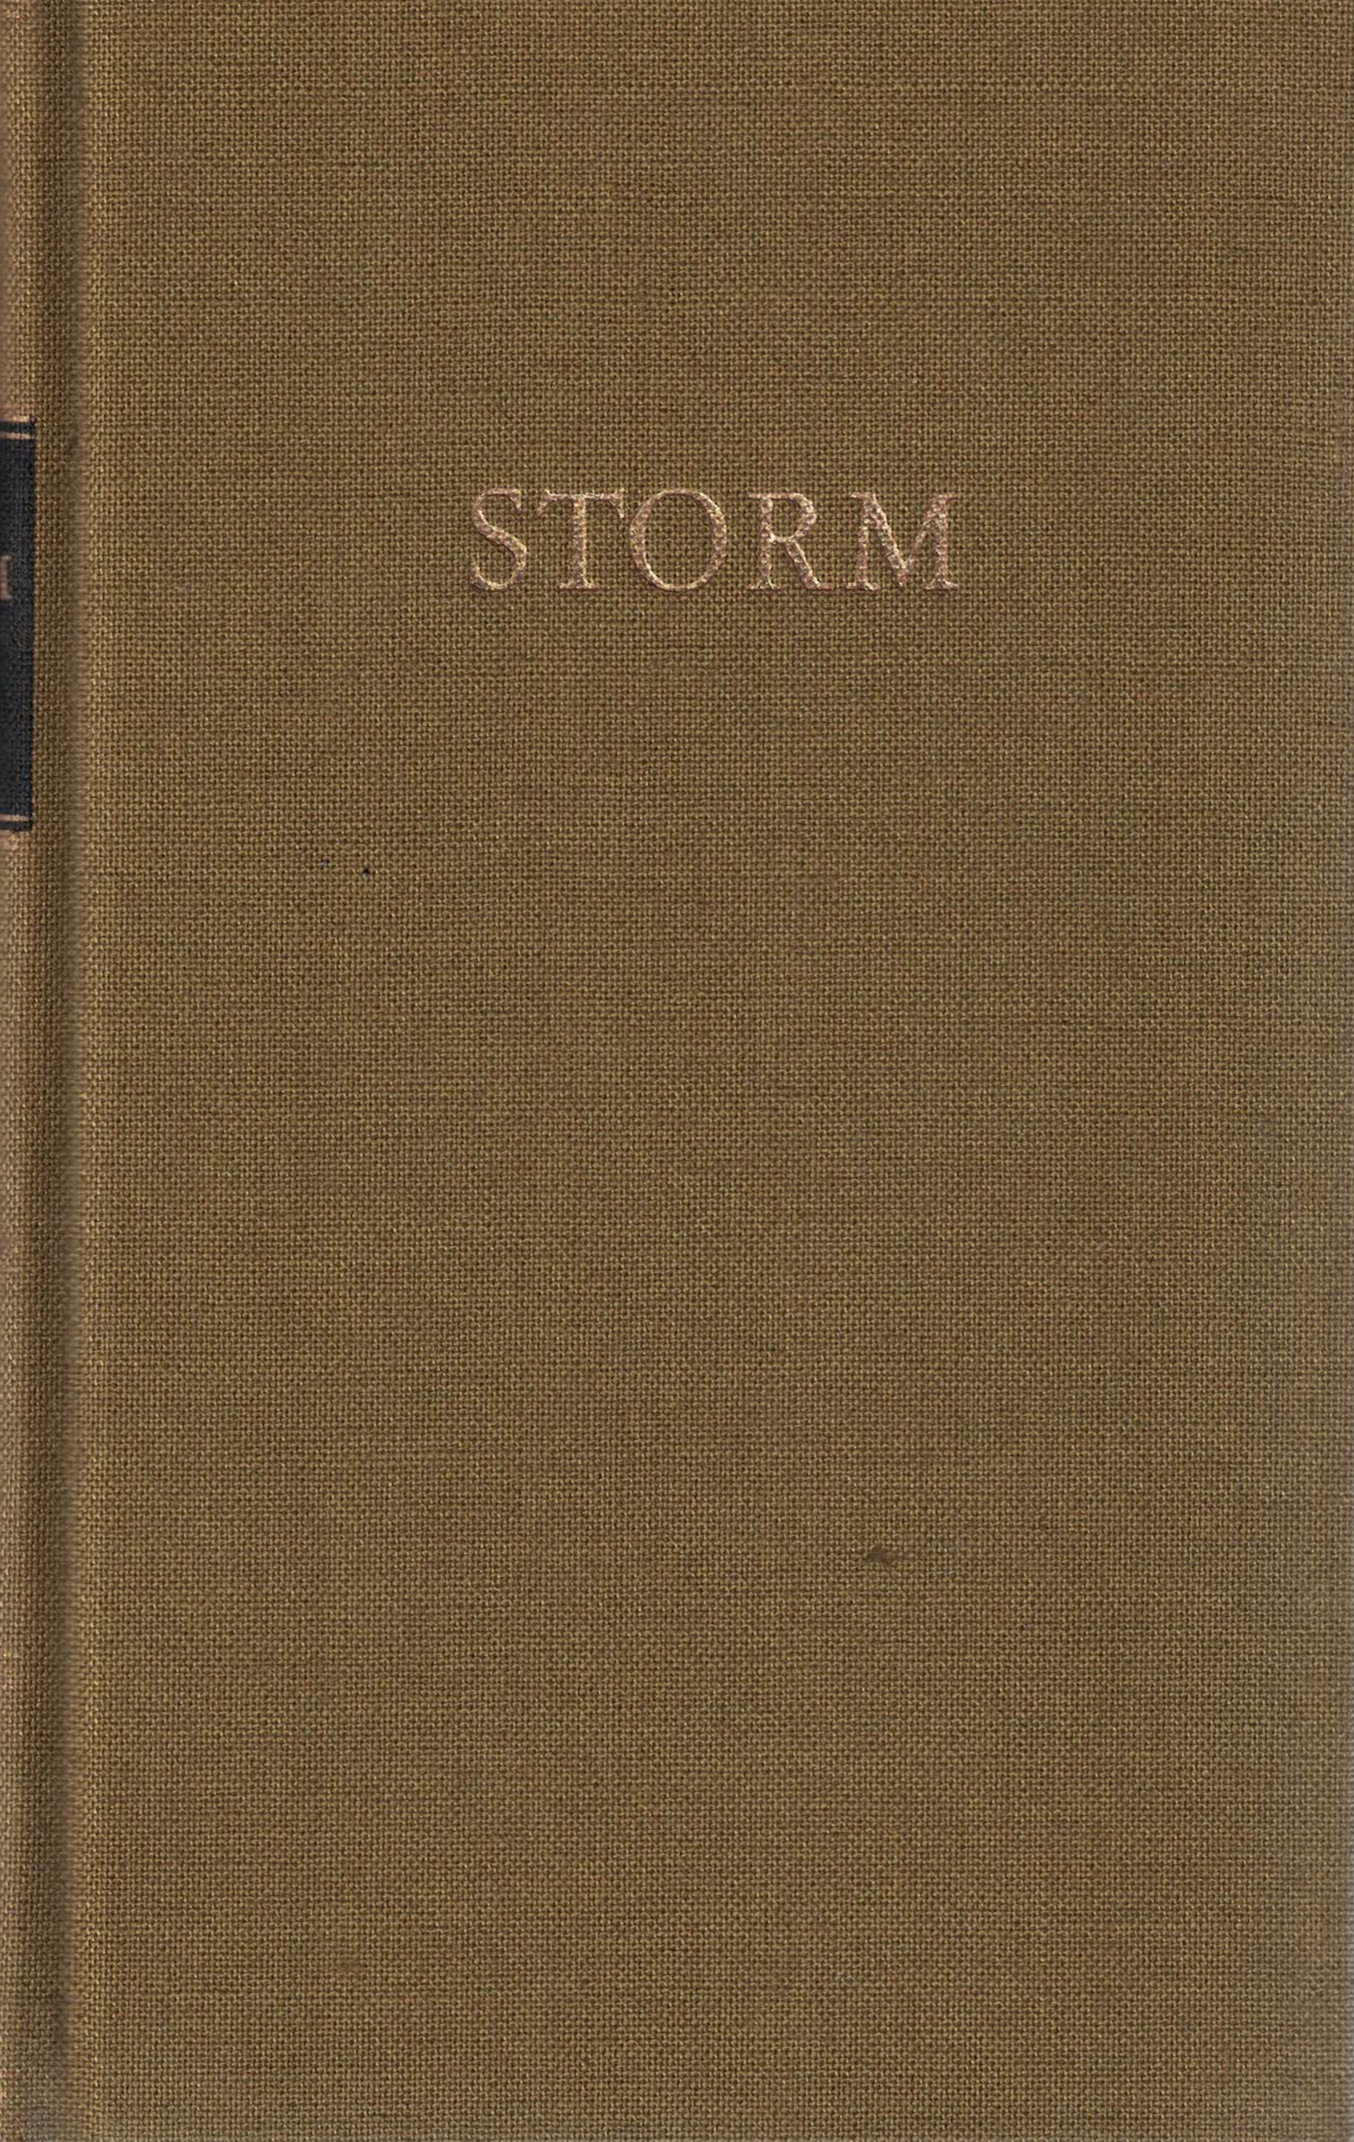 Storm Werke in zwei Bänden